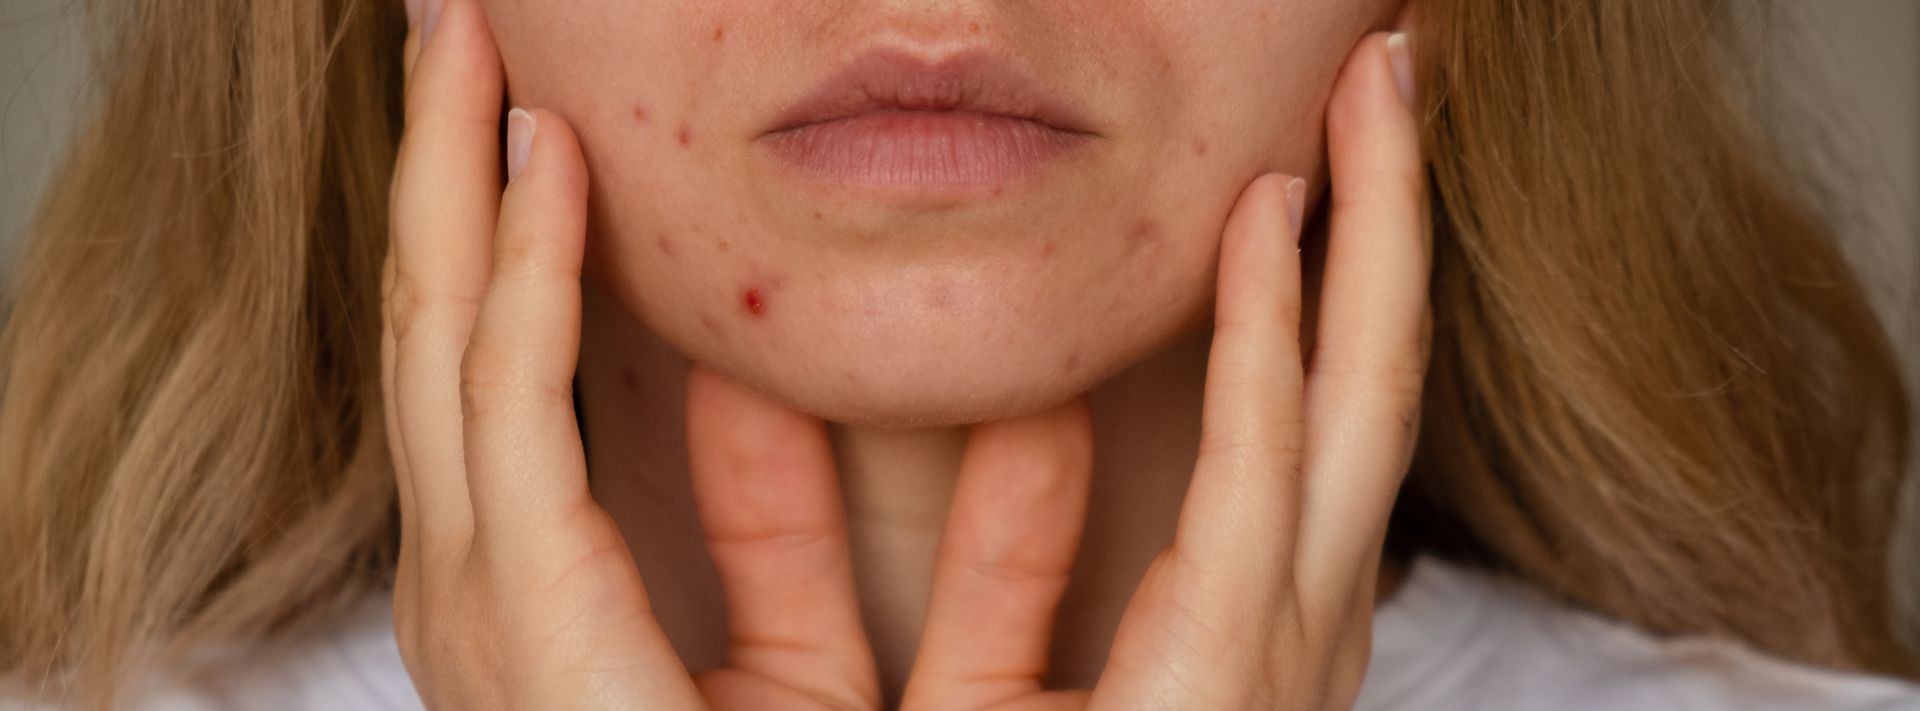 Traitement contre l’acné